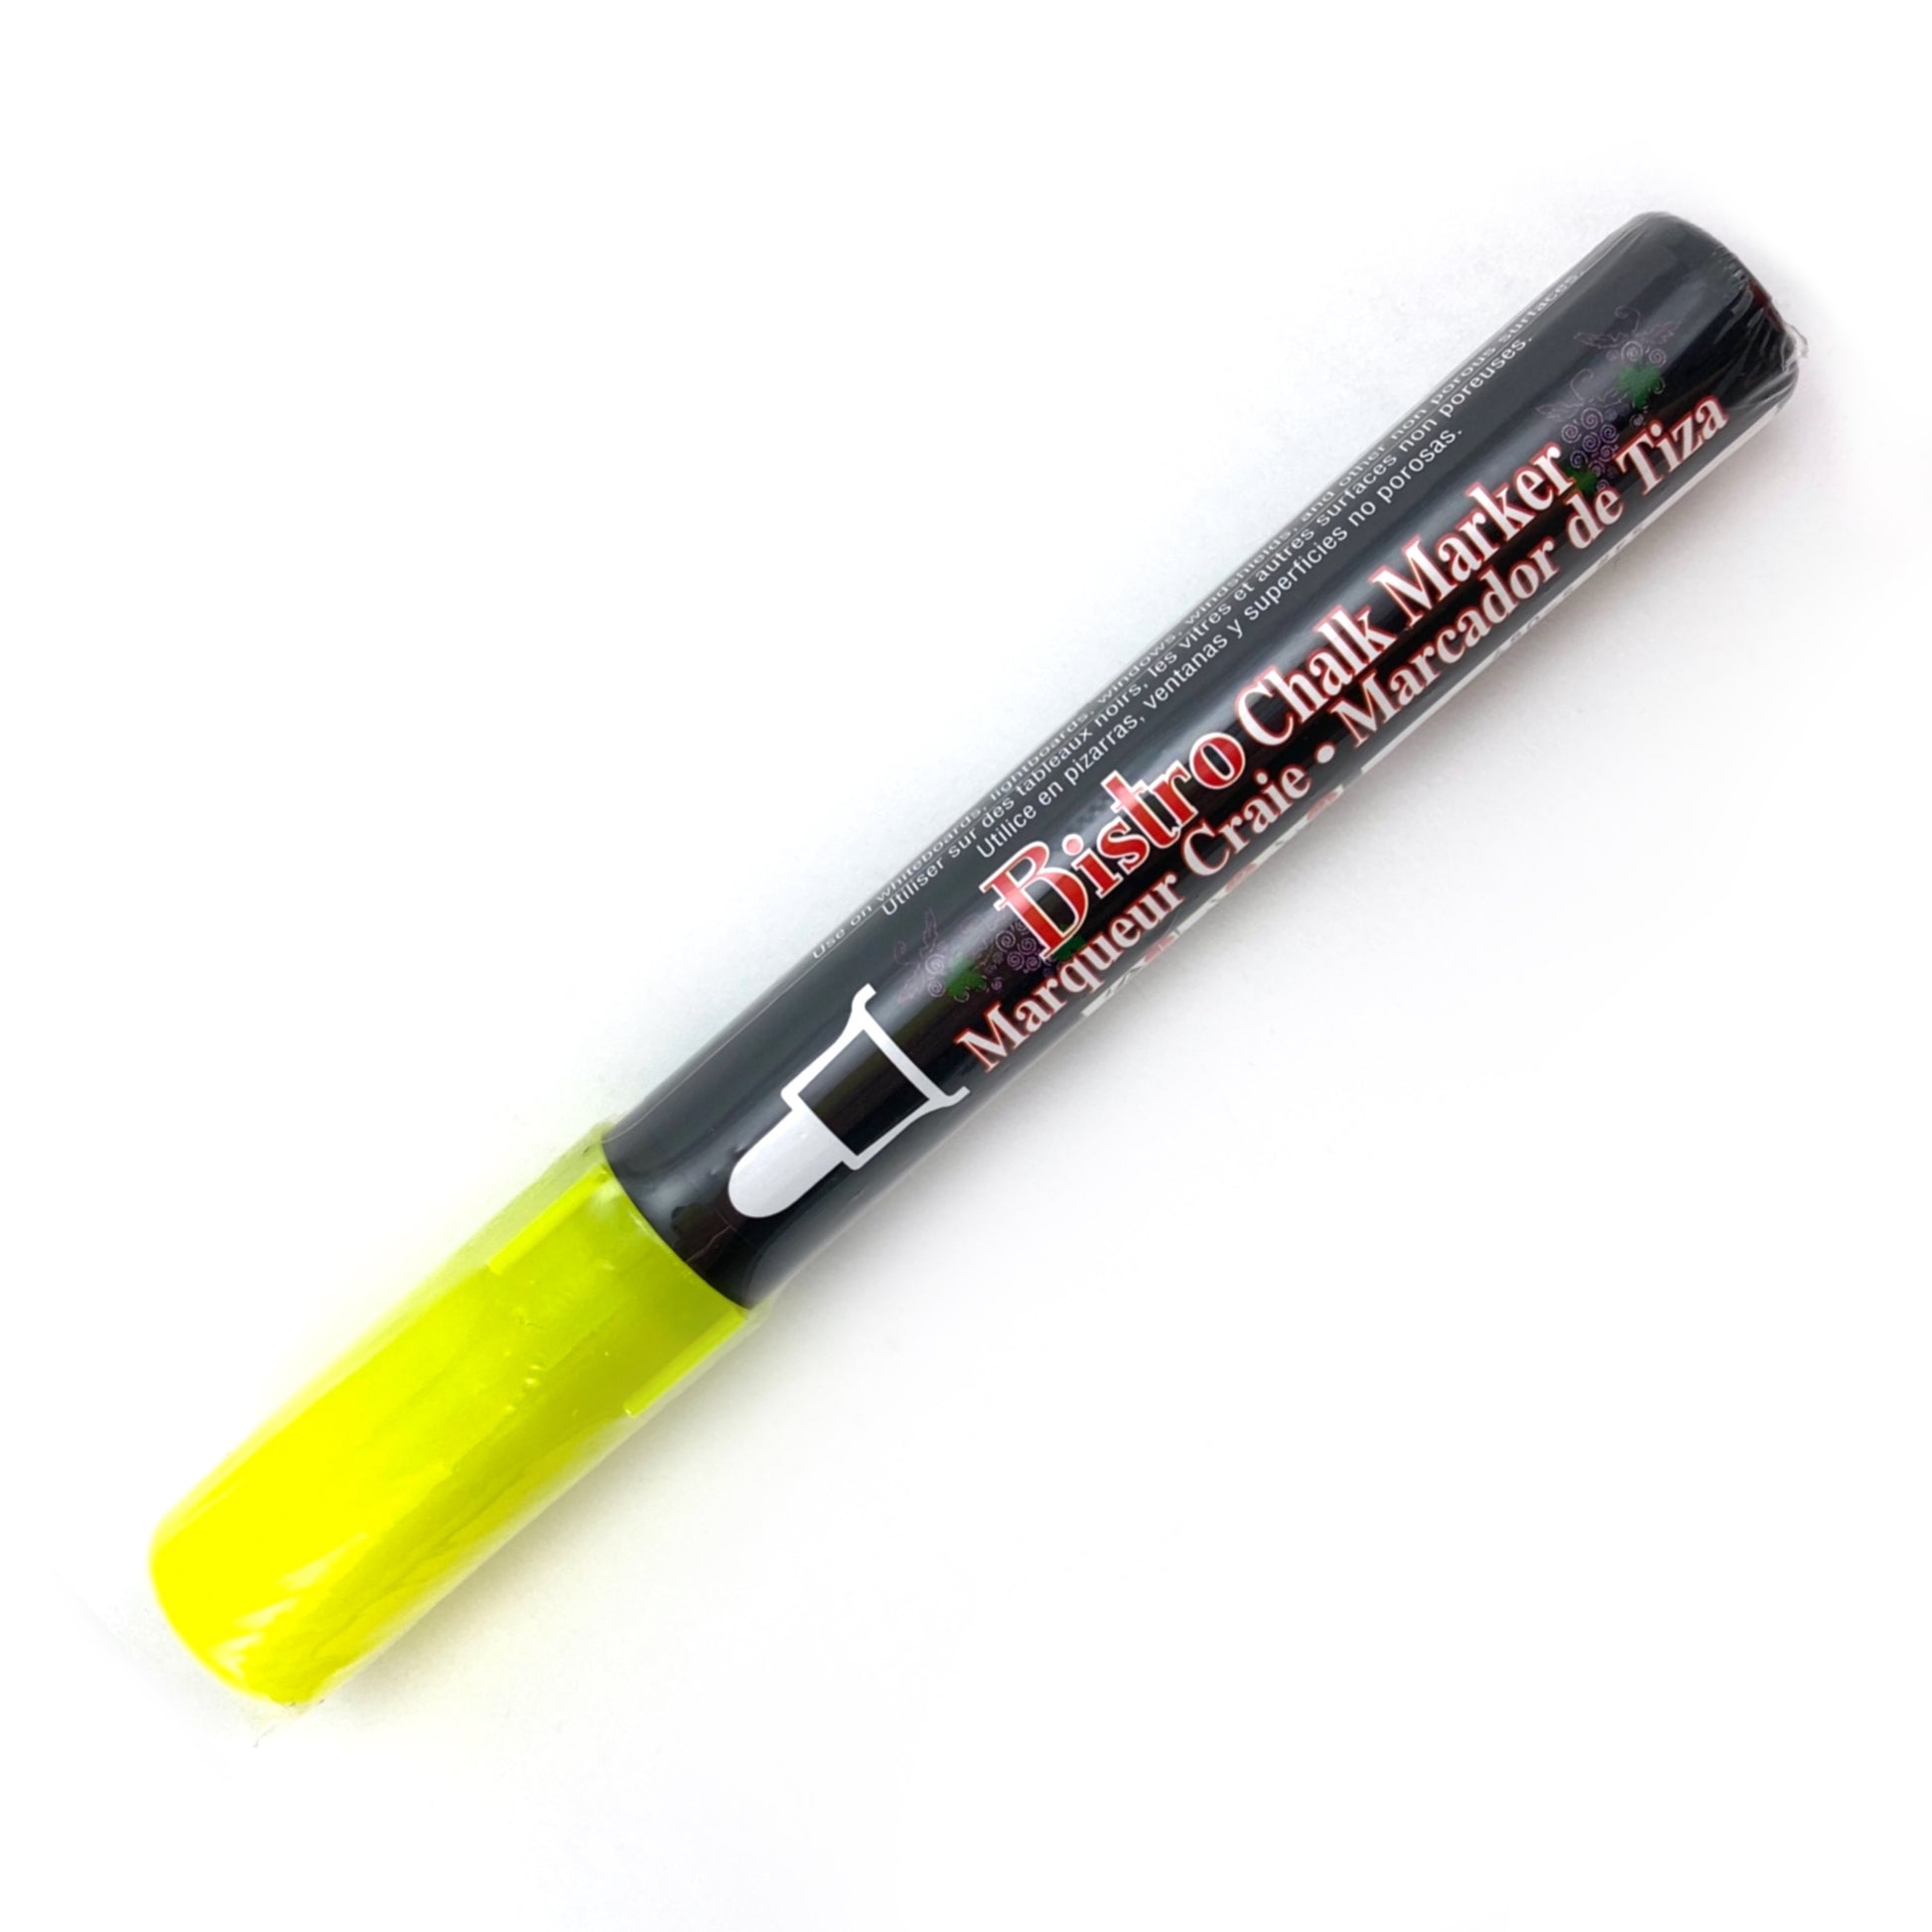 Bistro Chalk Marker - Broad (6mm) - Fluorescent Yellow by Marvy Uchida - K. A. Artist Shop